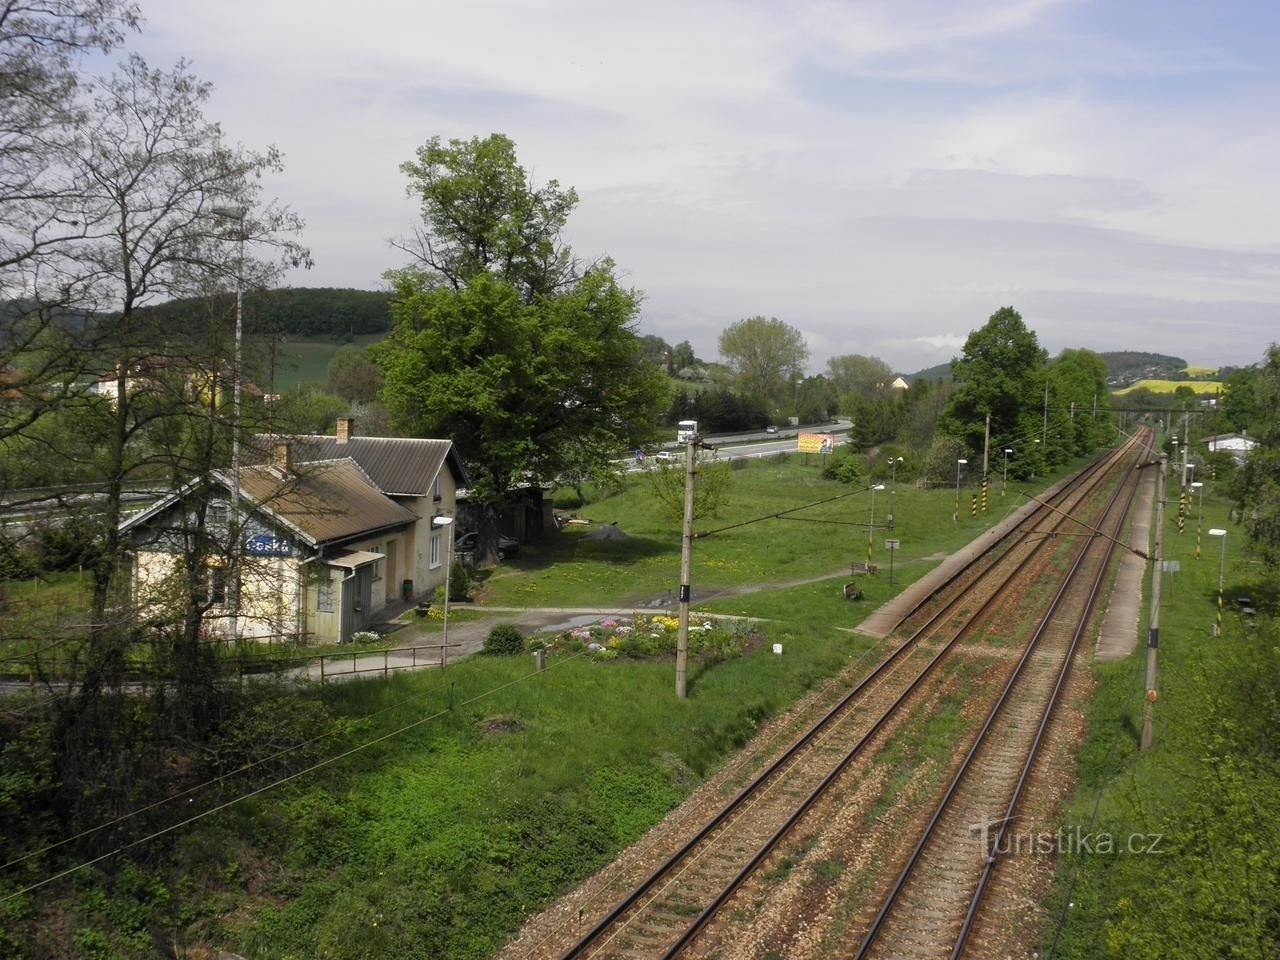 Чешские железные дороги - 8.5.2010